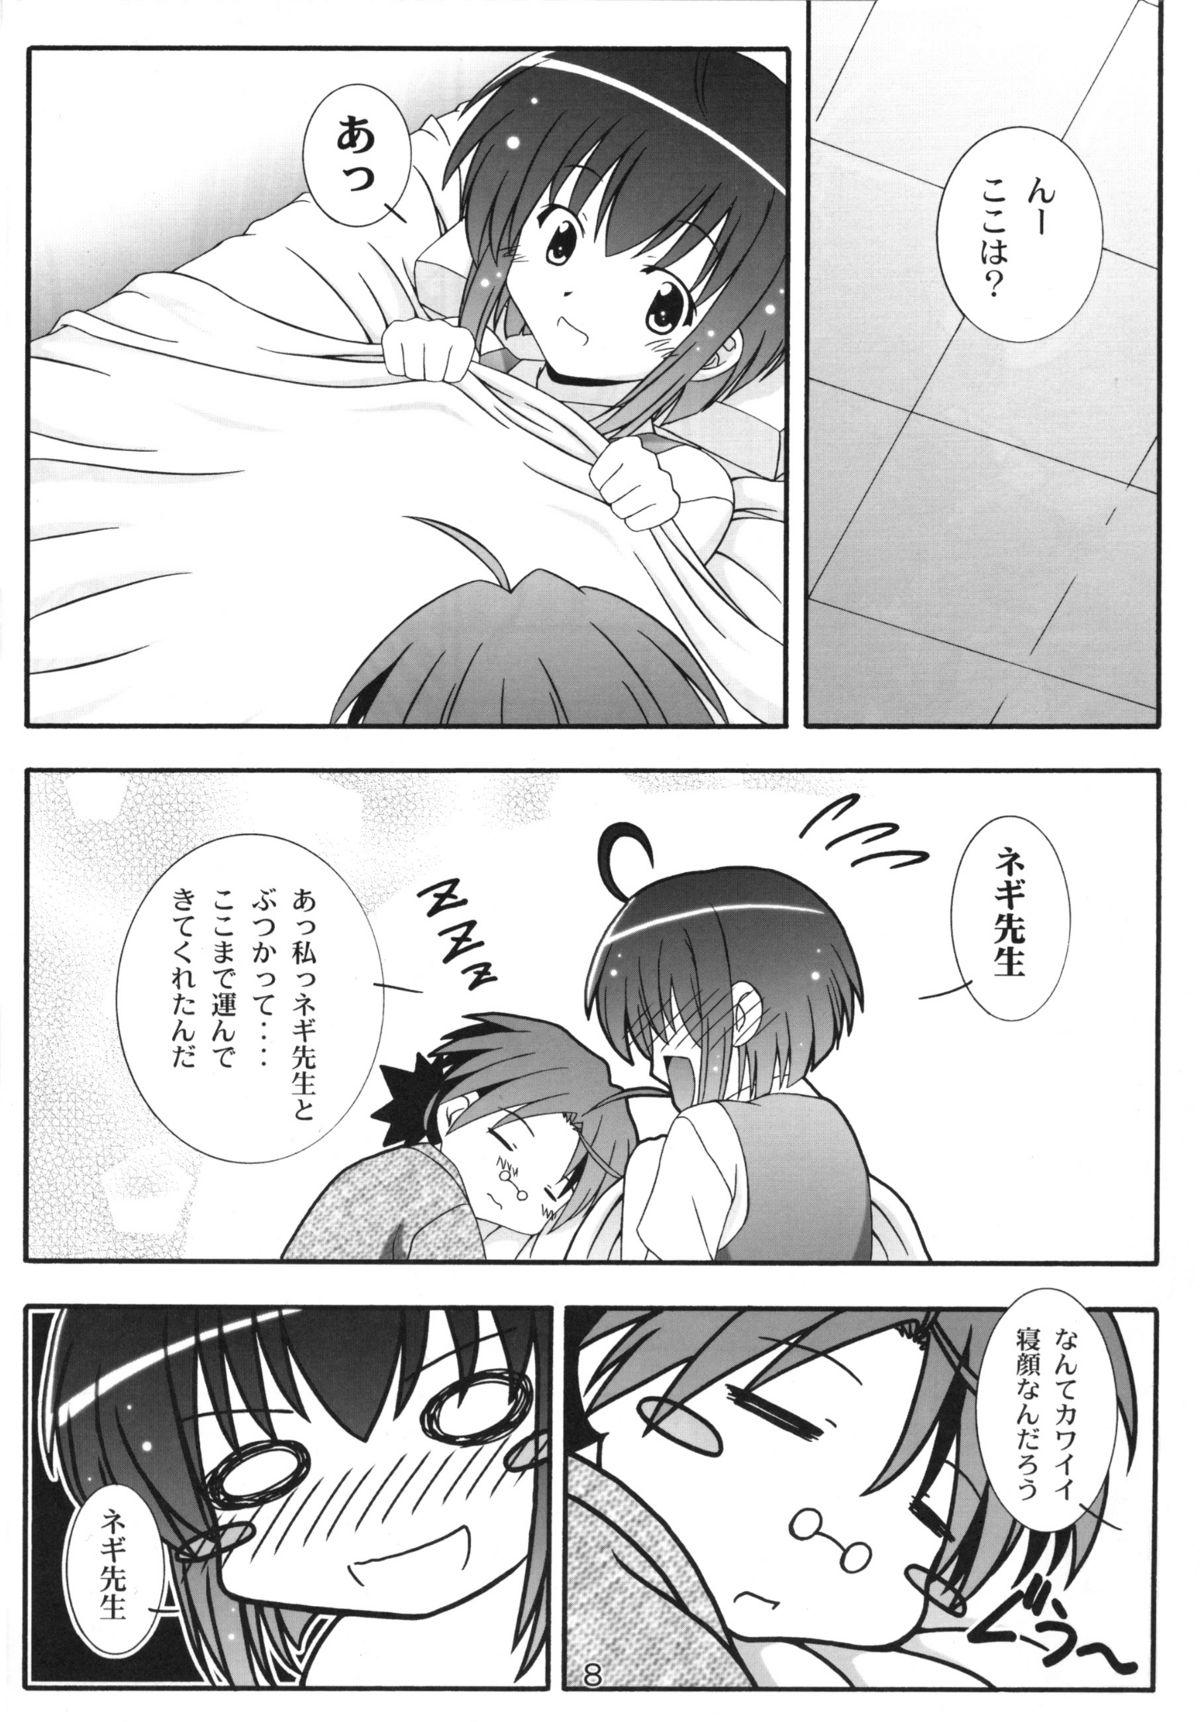 Assfucked Nodoca no Dream | Nodoca's Dream - Mahou sensei negima Alone - Page 7